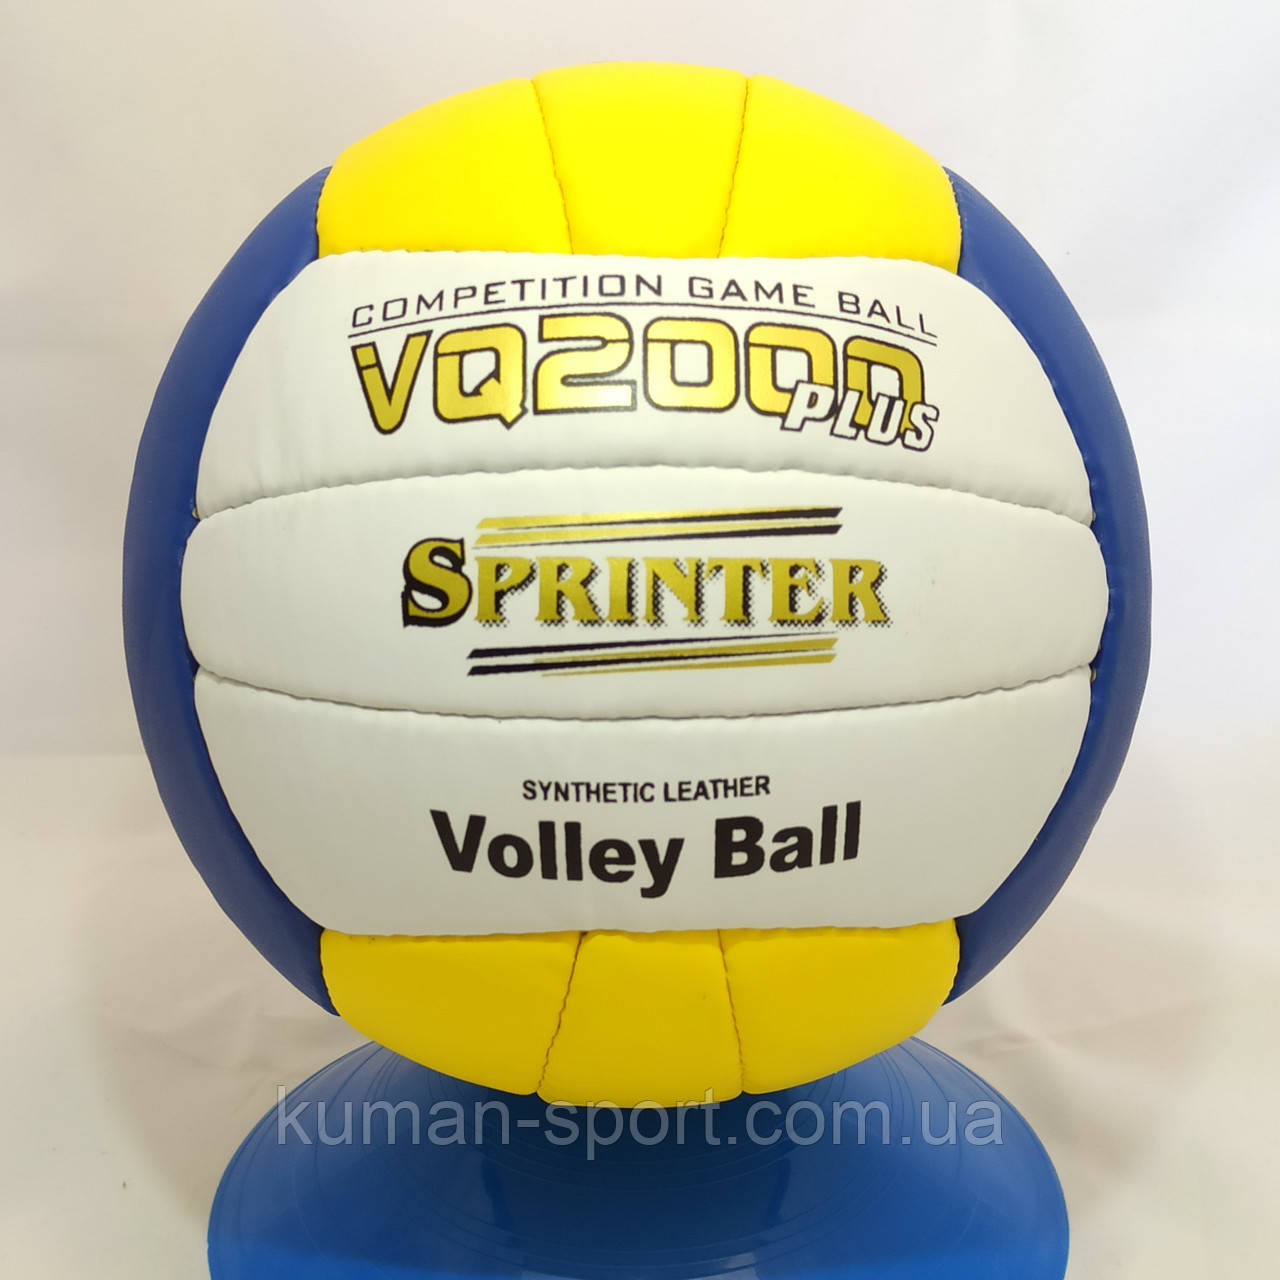 М'яч волейбольний SPRINTER VQ2000 sp